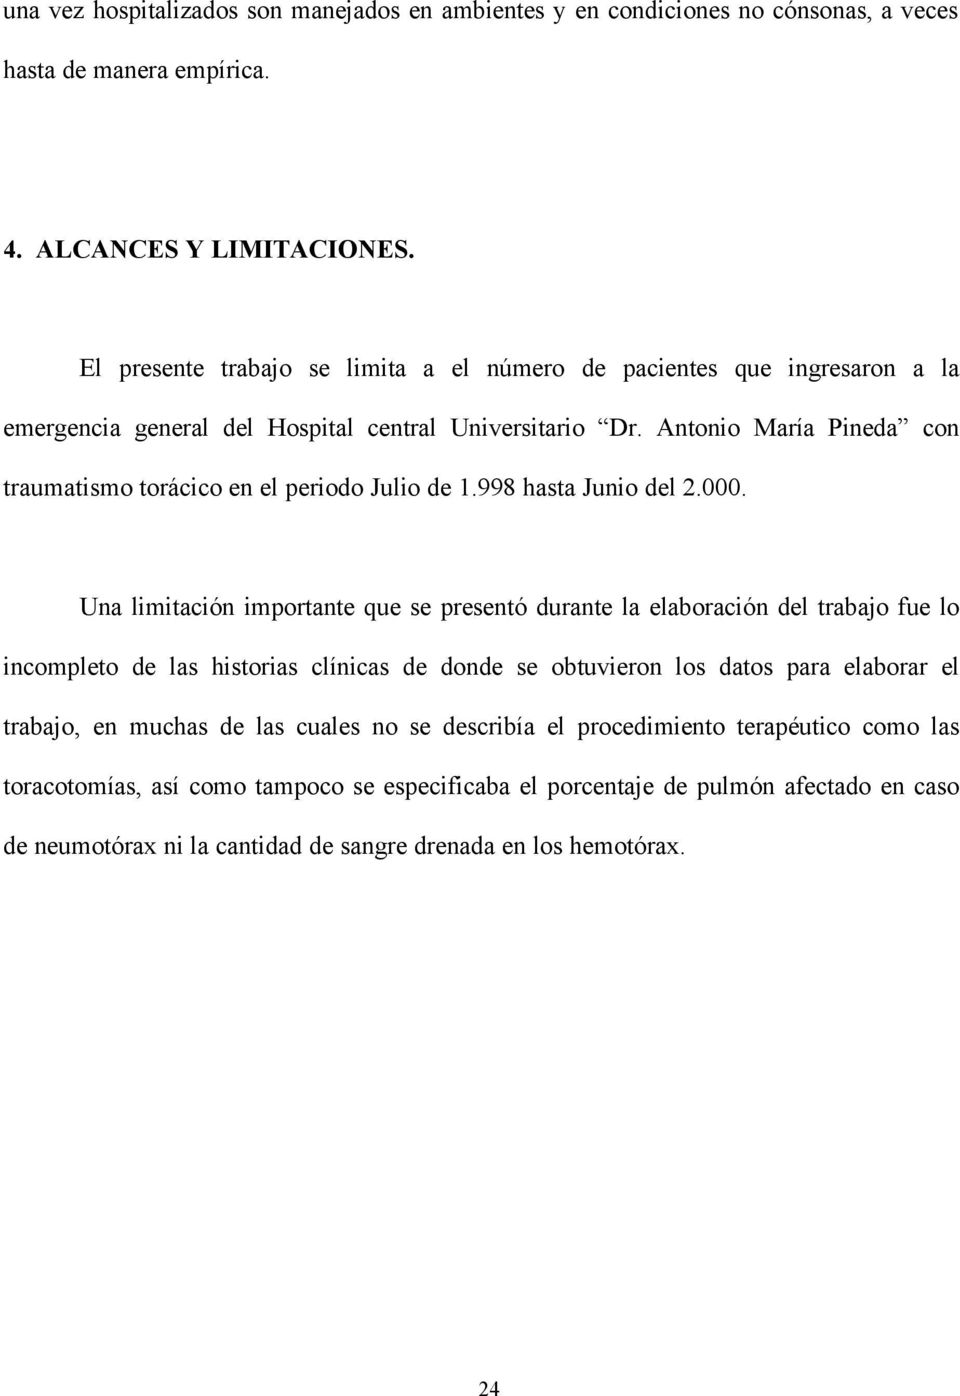 Antonio María Pineda con traumatismo torácico en el periodo Julio de 1.998 hasta Junio del 2.000.